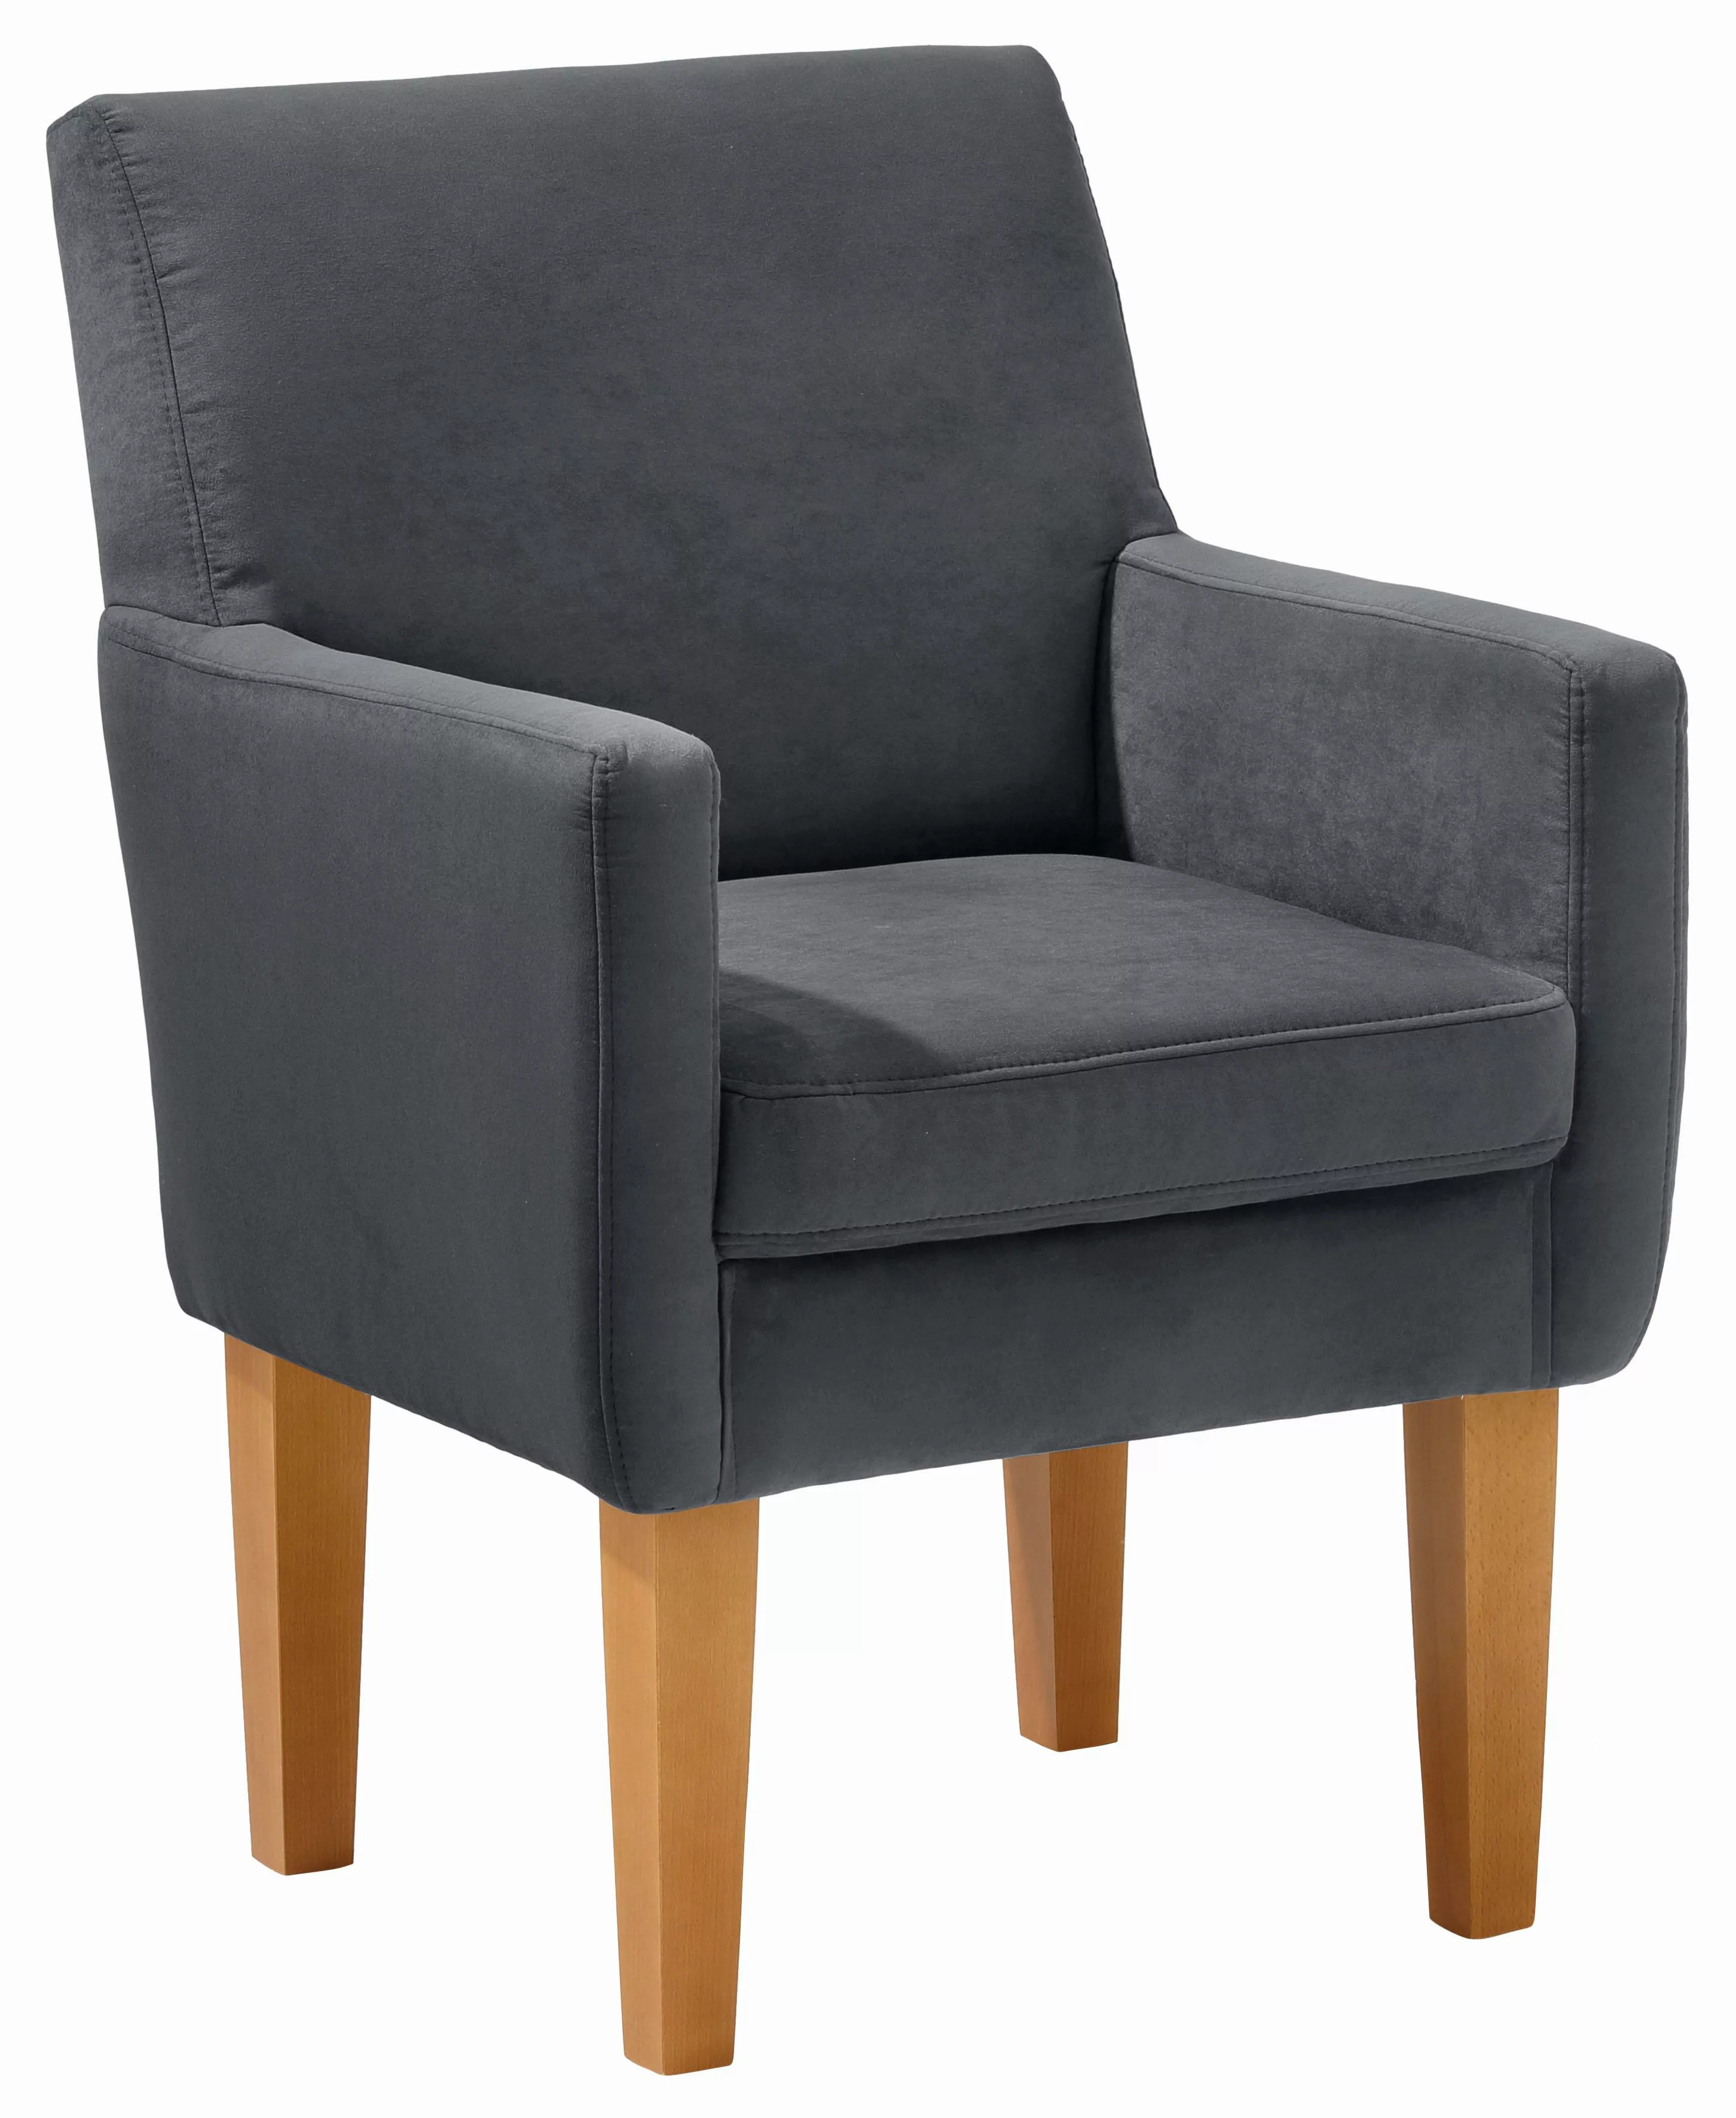 Home affaire Sessel "Fehmarn", komfortable Sitzhöhe von 54 cm, in 3 verschi günstig online kaufen